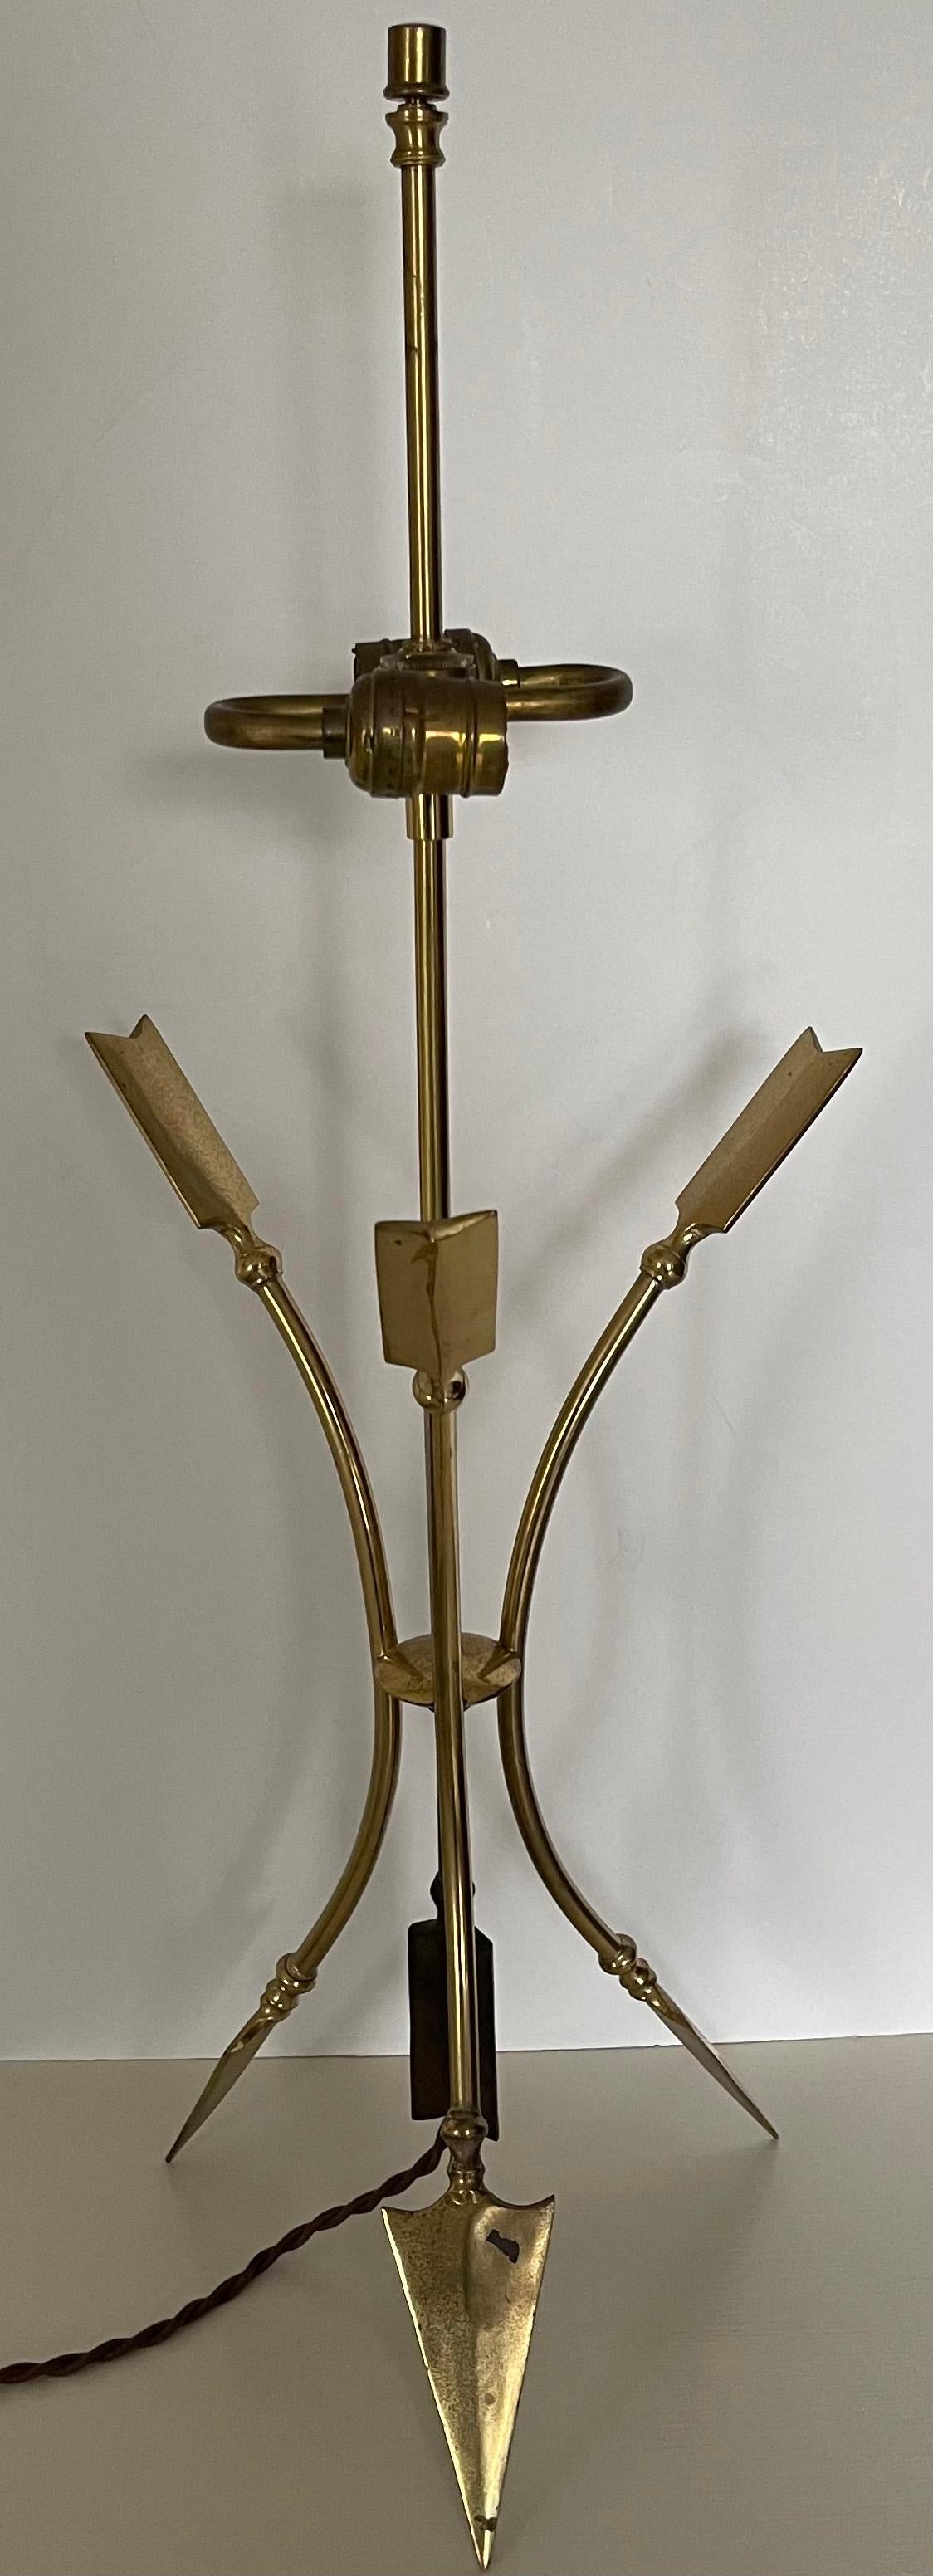 Lampe de style Directorie en laiton des années 1960 de la Maison Jansen. Le laiton conserve une patine générale non polie. Pas de marque de fabricant ni de signature. 
Câblage refait à neuf avec un cordon de soie tressée marron. La double prise